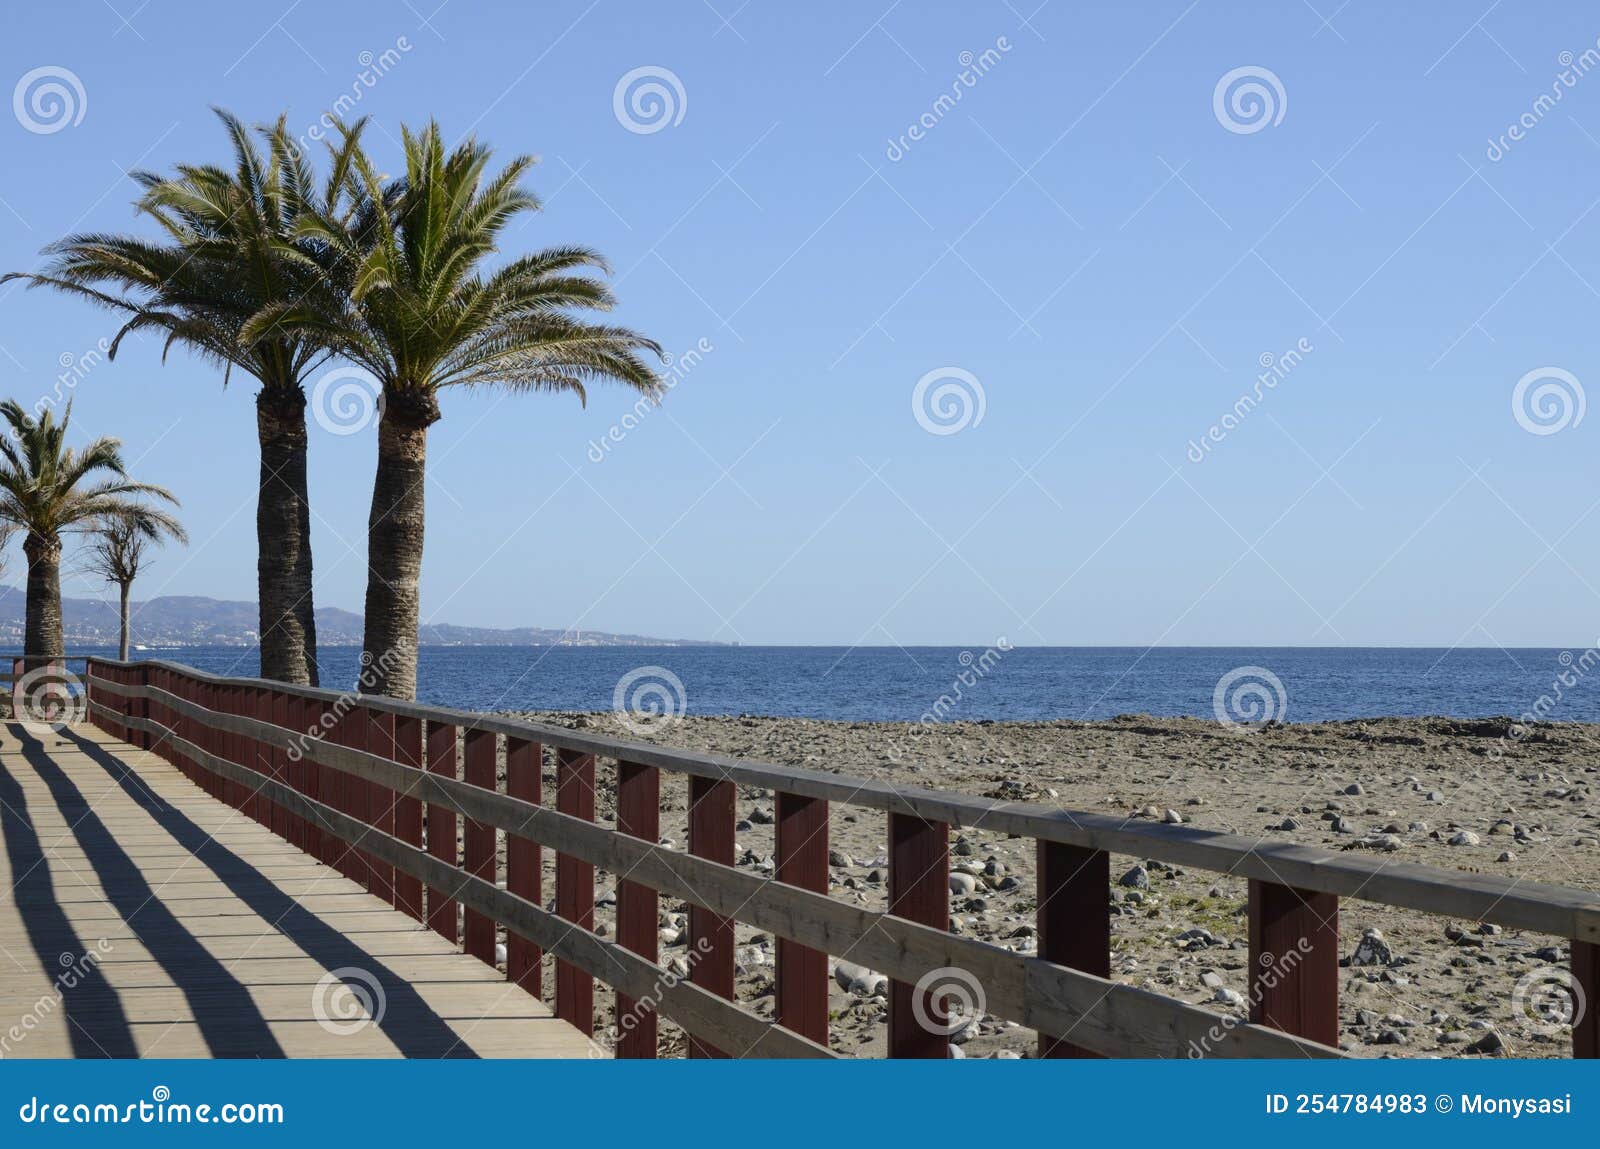 palms tree next to litoral path